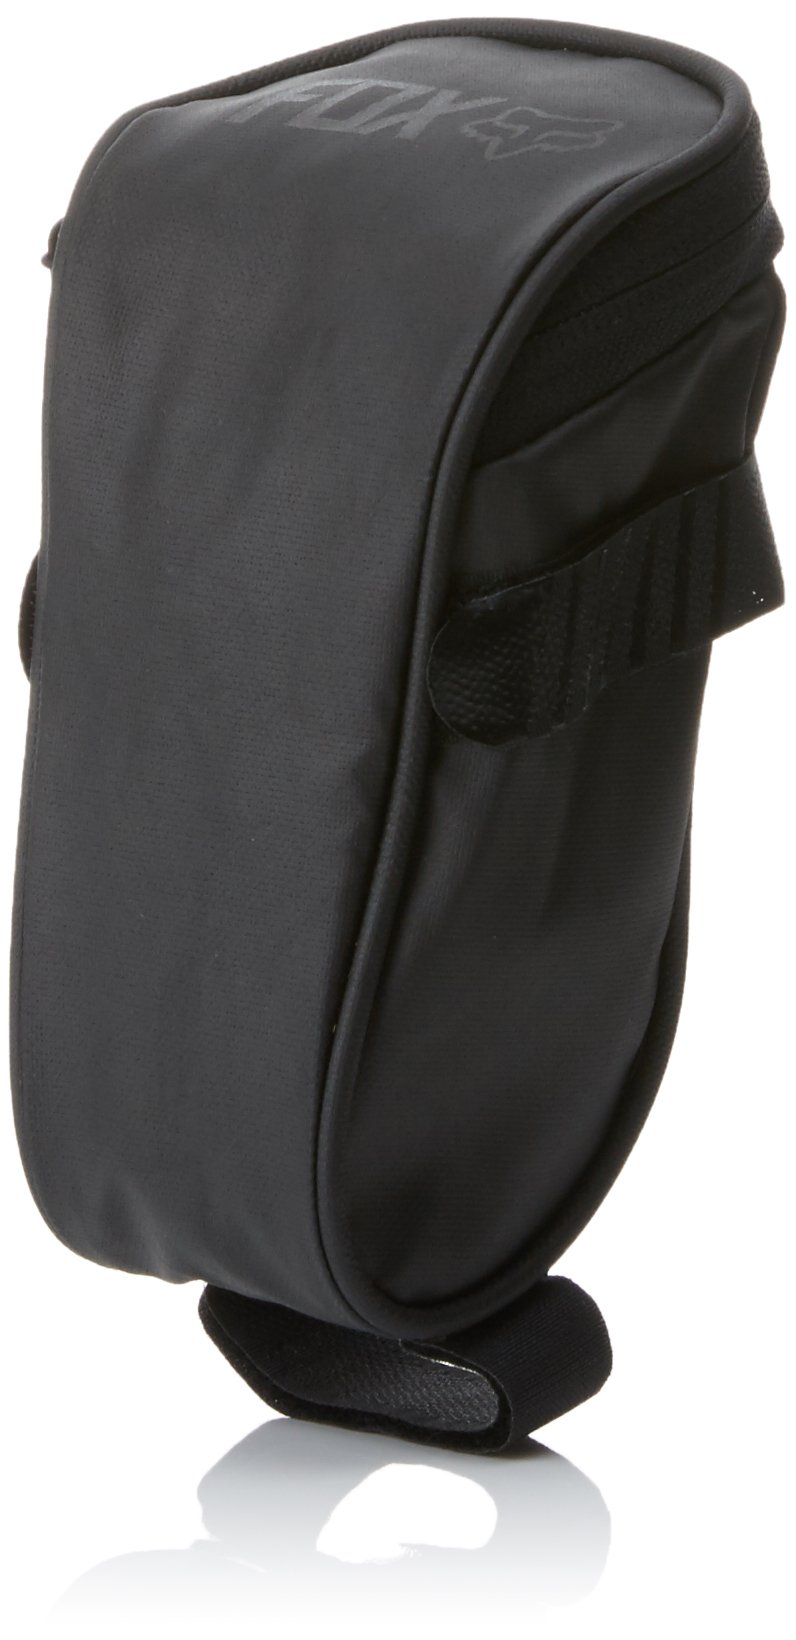 Fox Satteltasche Small Seat Bag, Black, 15 x 10 x 5 cm, 1 Liter, 15692-001 von Fox